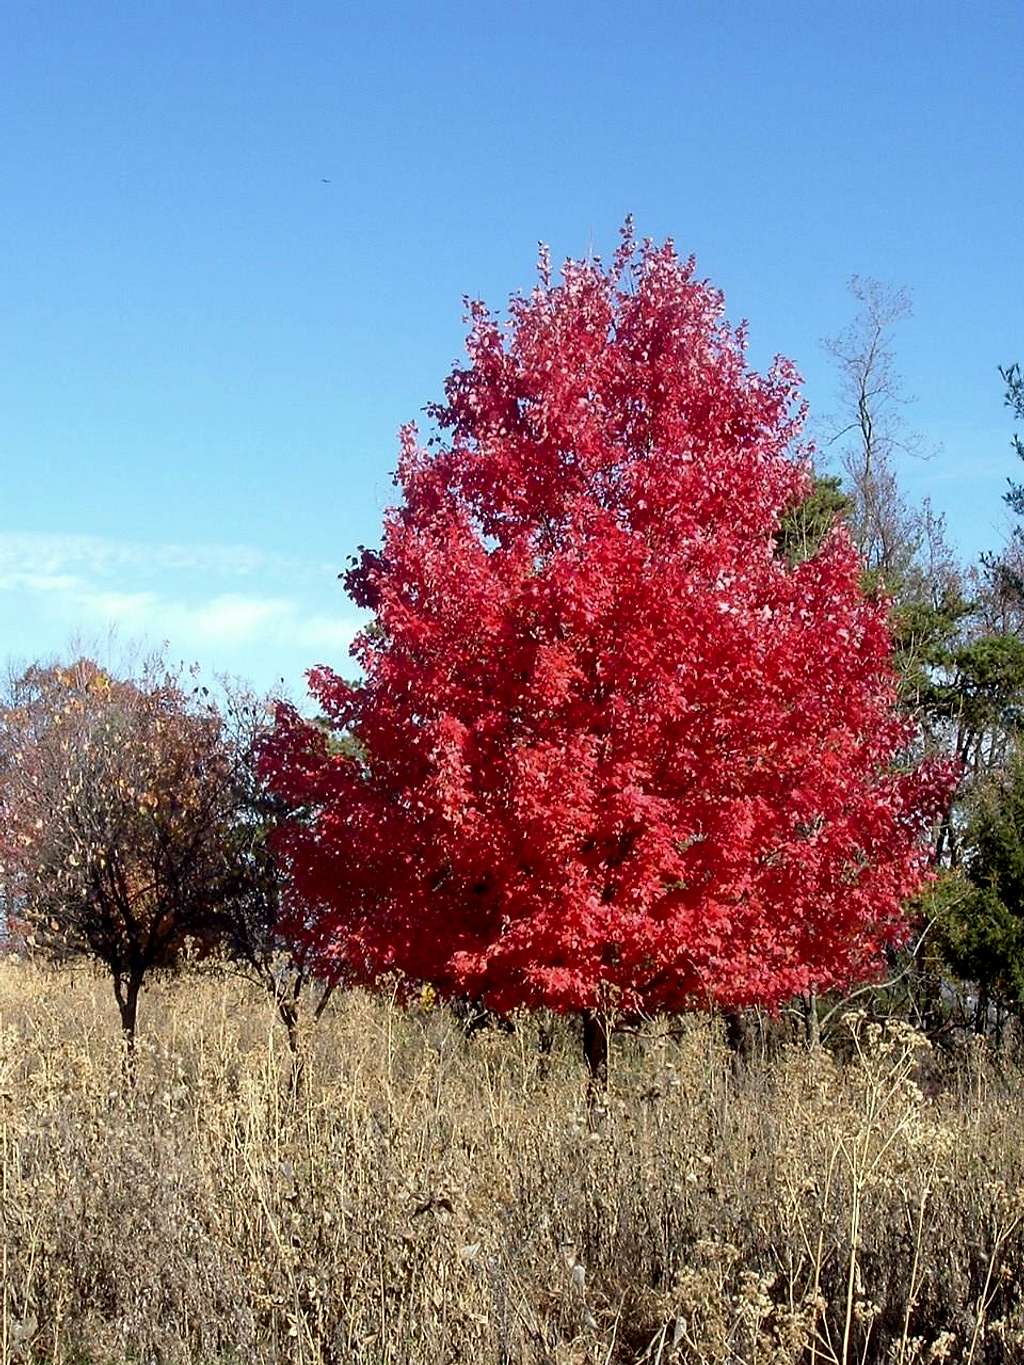 Leaves Turn Red on Dickey Ridge